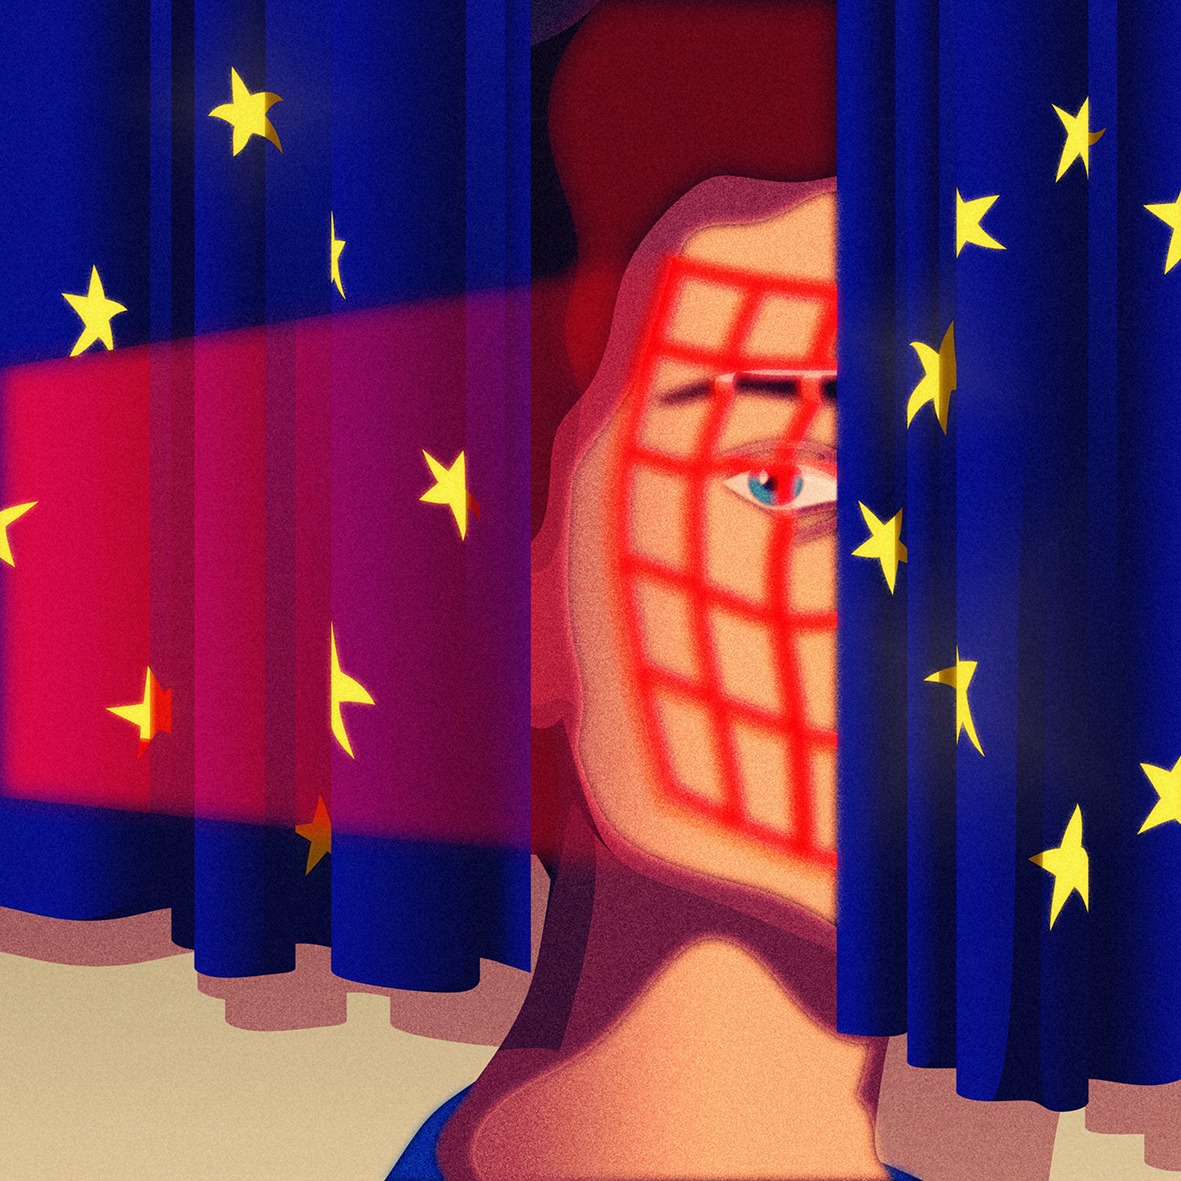 Politico EU Facial recognition